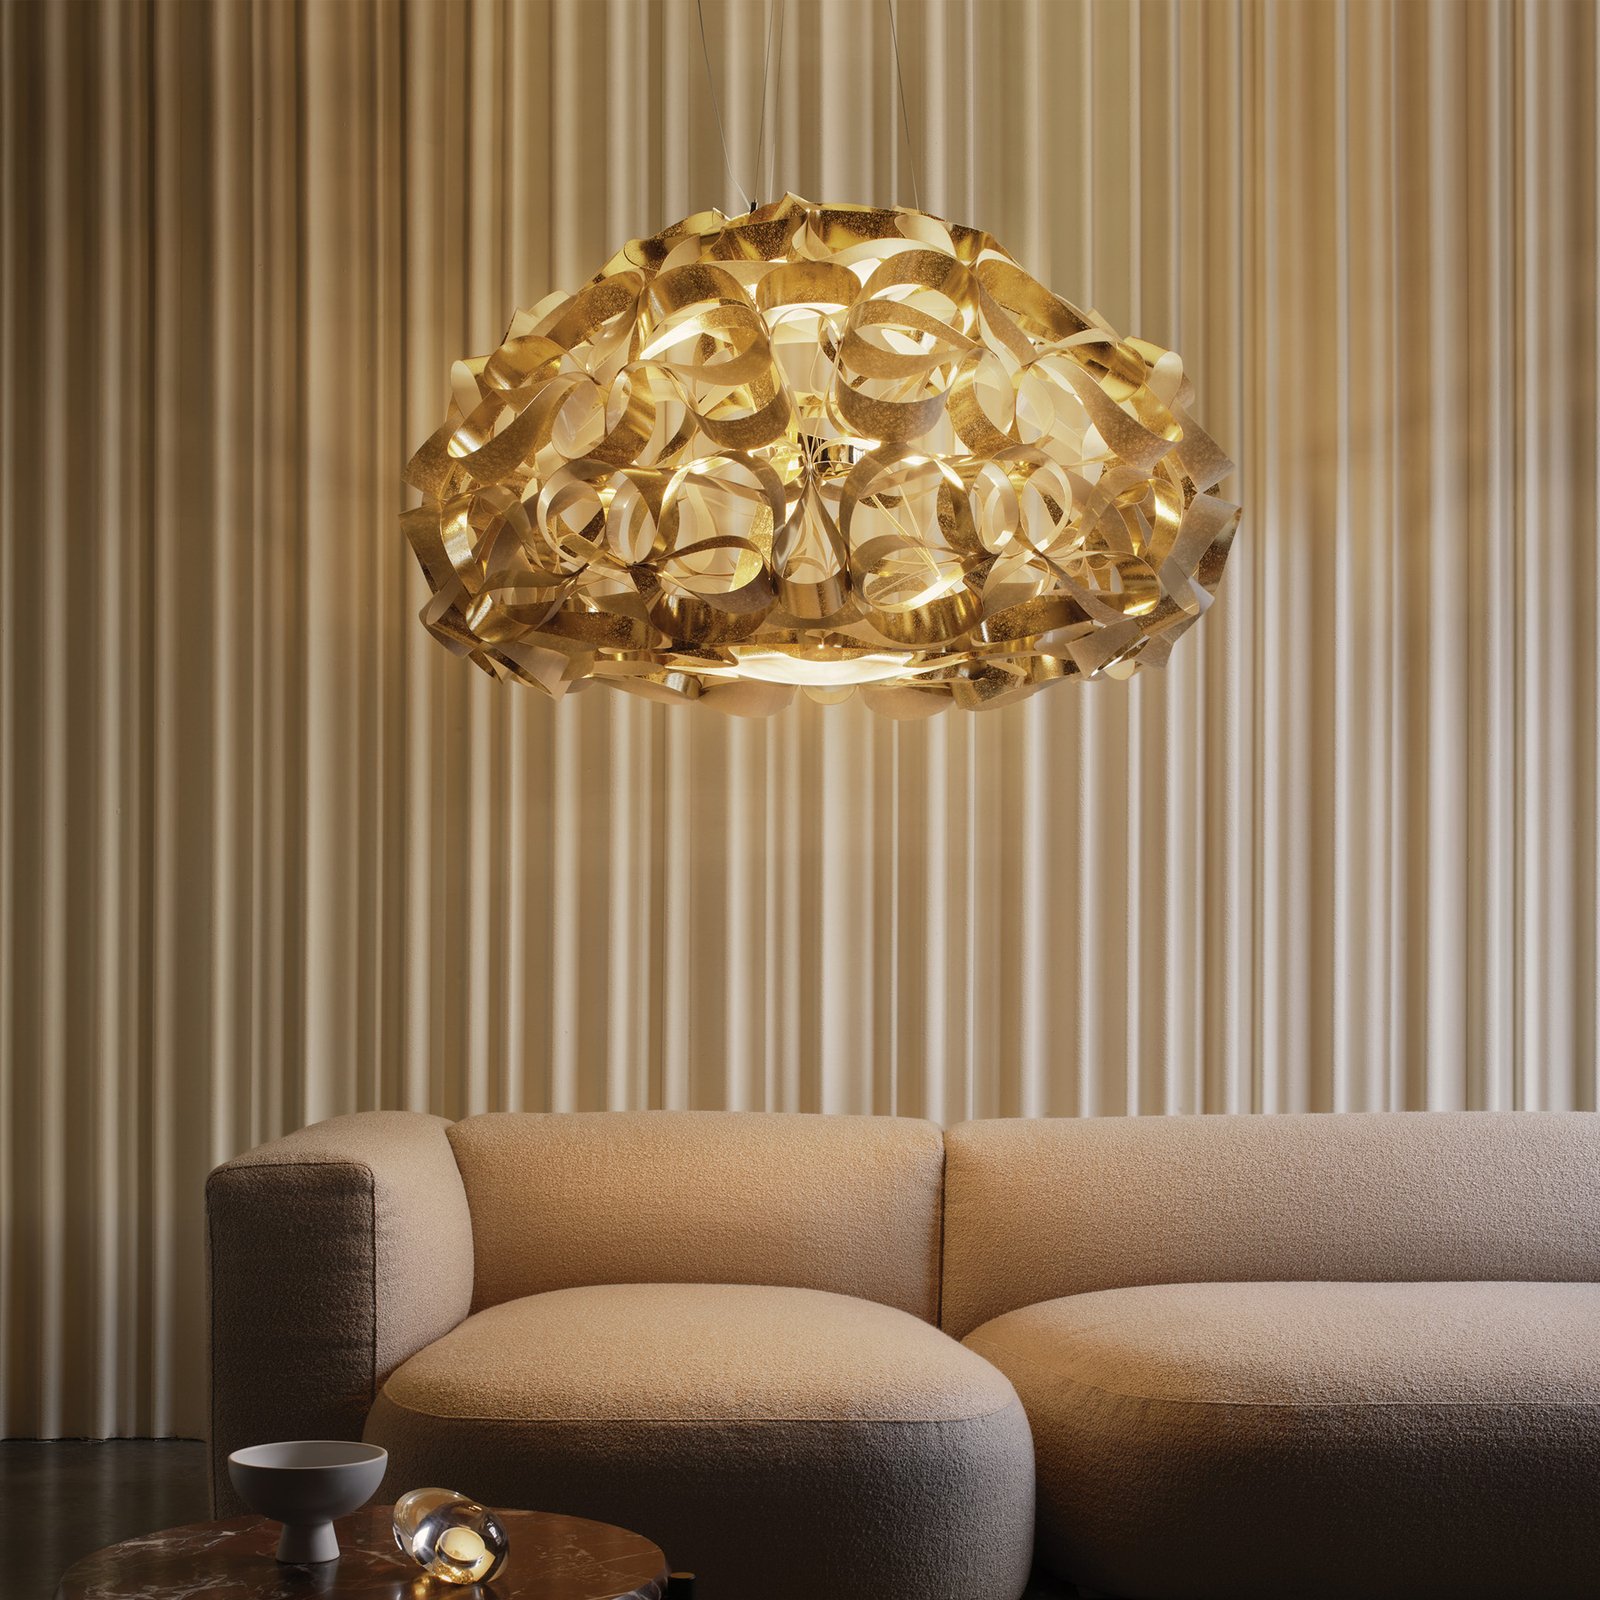 Lampa wisząca Quantica firmy Slamp, kolor złoty, Ø 120 cm